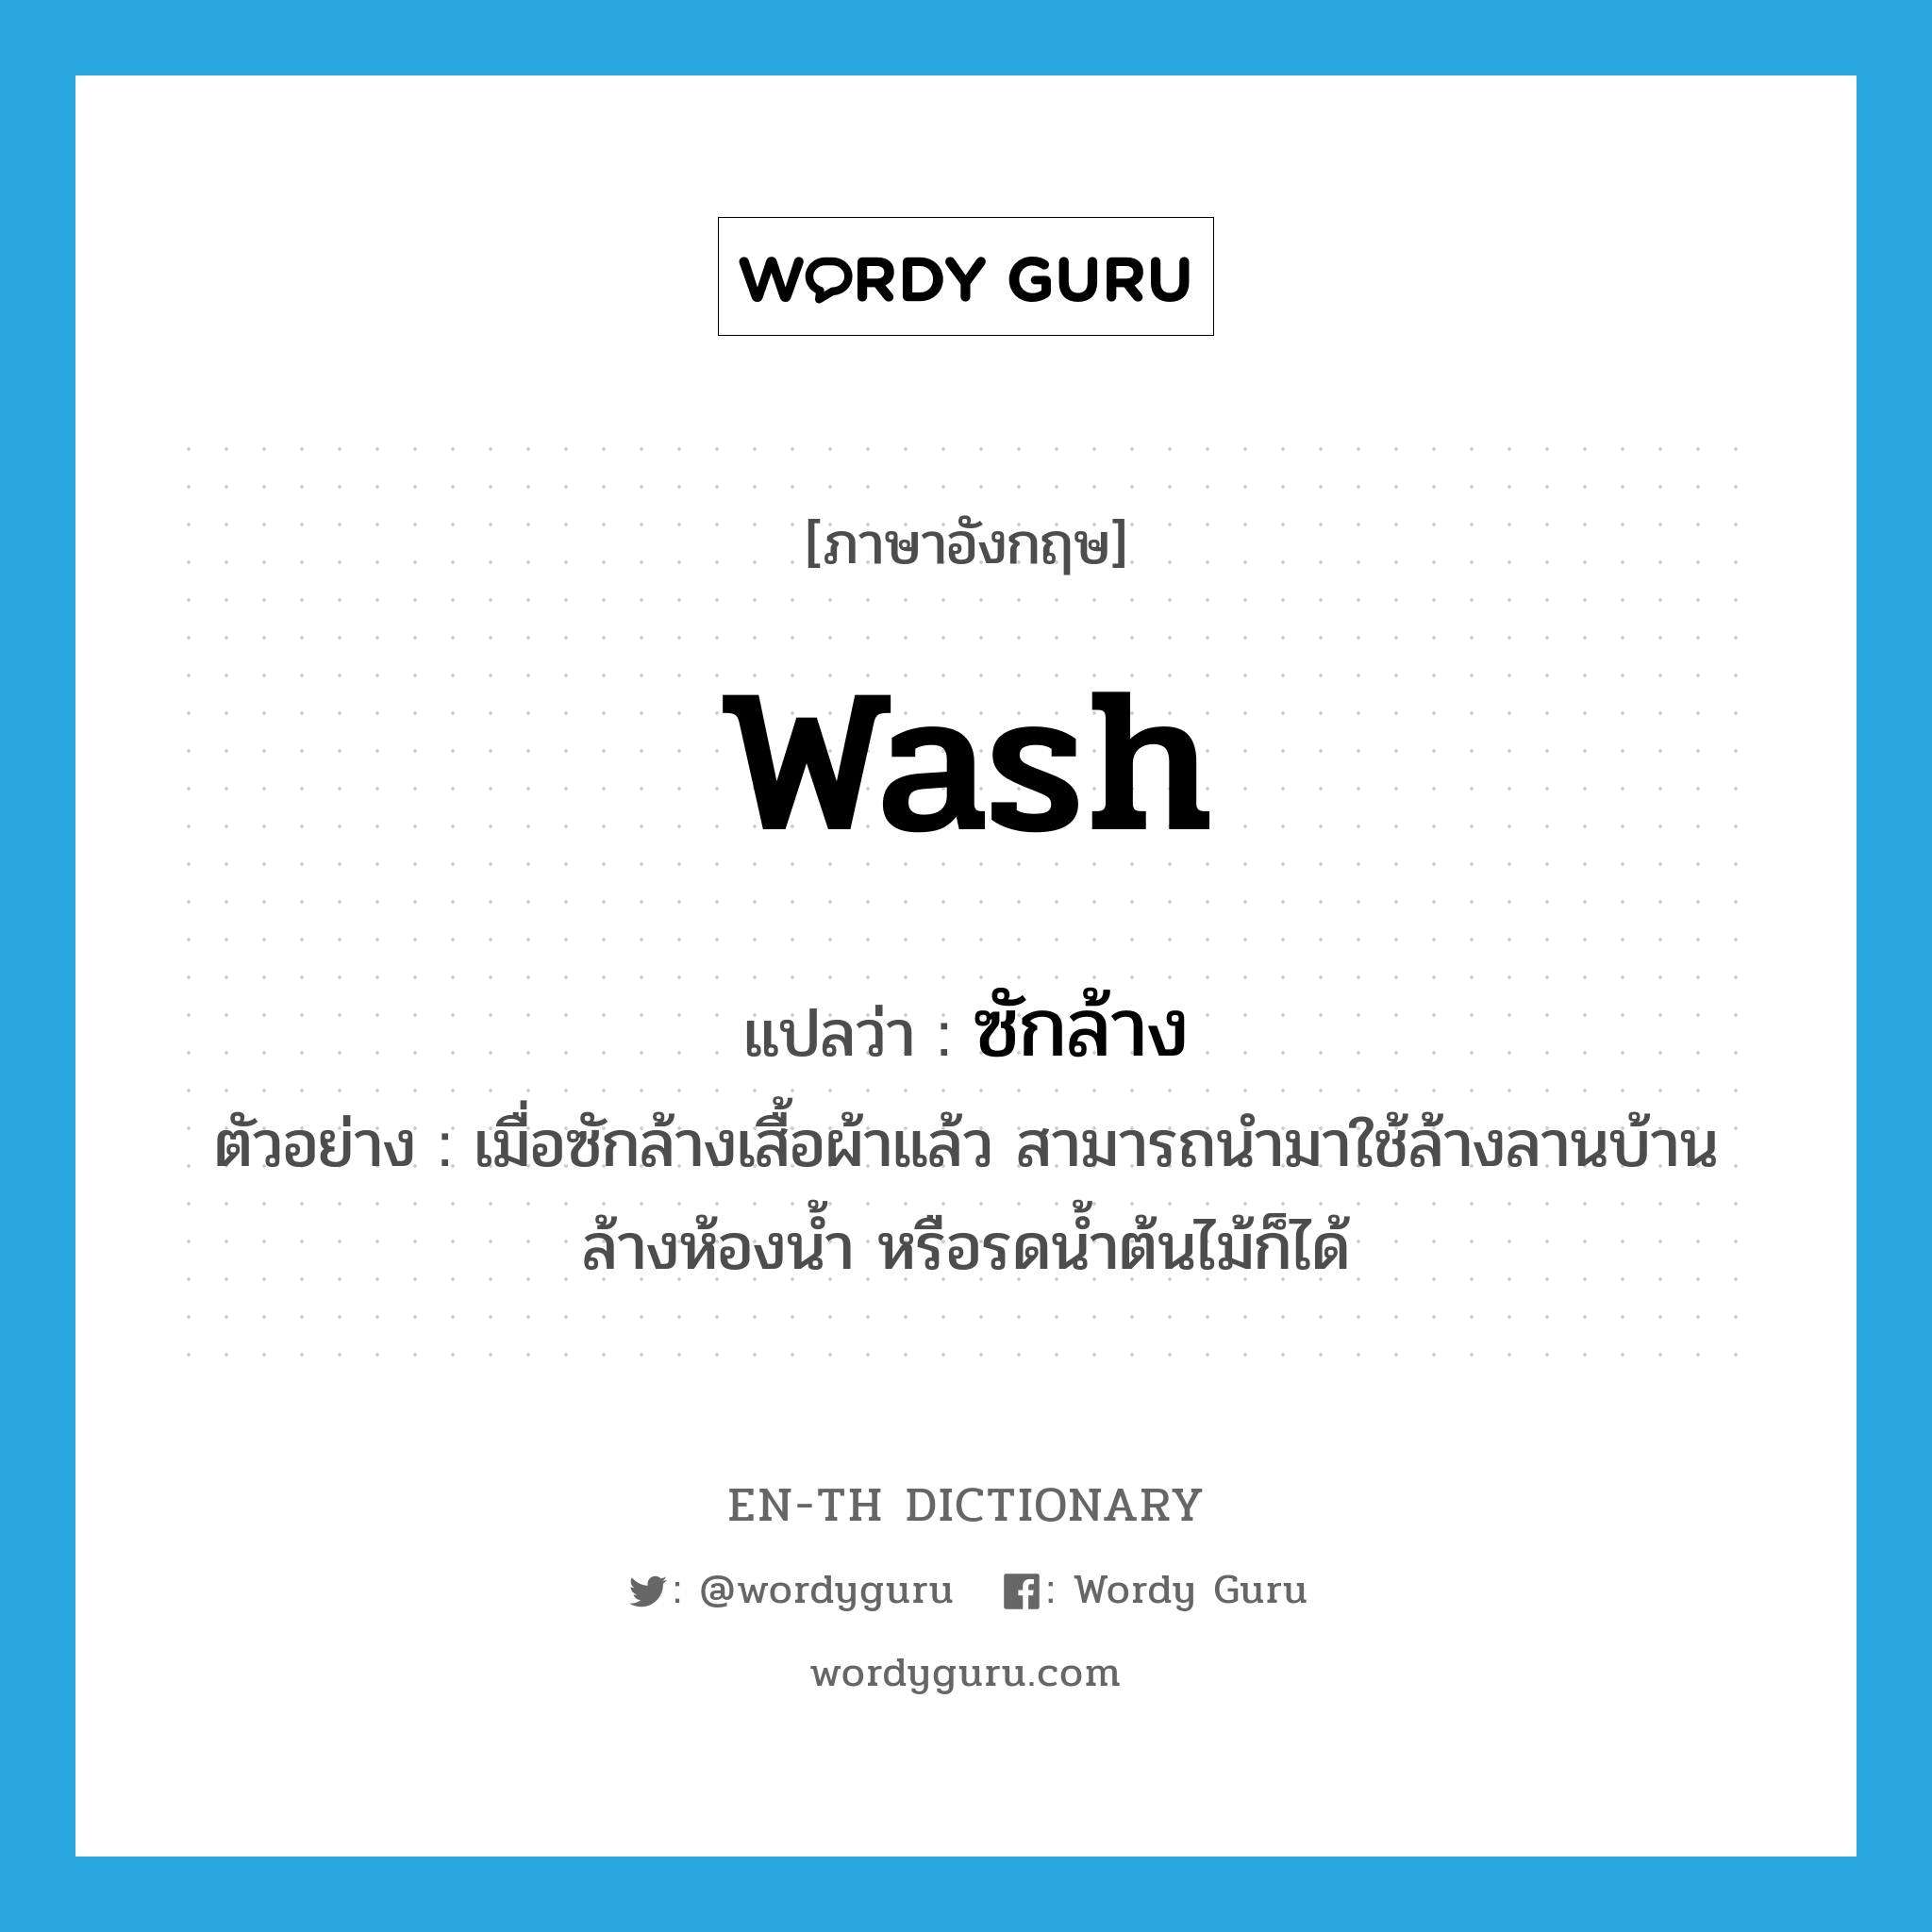 wash แปลว่า?, คำศัพท์ภาษาอังกฤษ wash แปลว่า ซักล้าง ประเภท V ตัวอย่าง เมื่อซักล้างเสื้อผ้าแล้ว สามารถนำมาใช้ล้างลานบ้าน ล้างห้องน้ำ หรือรดน้ำต้นไม้ก็ได้ หมวด V